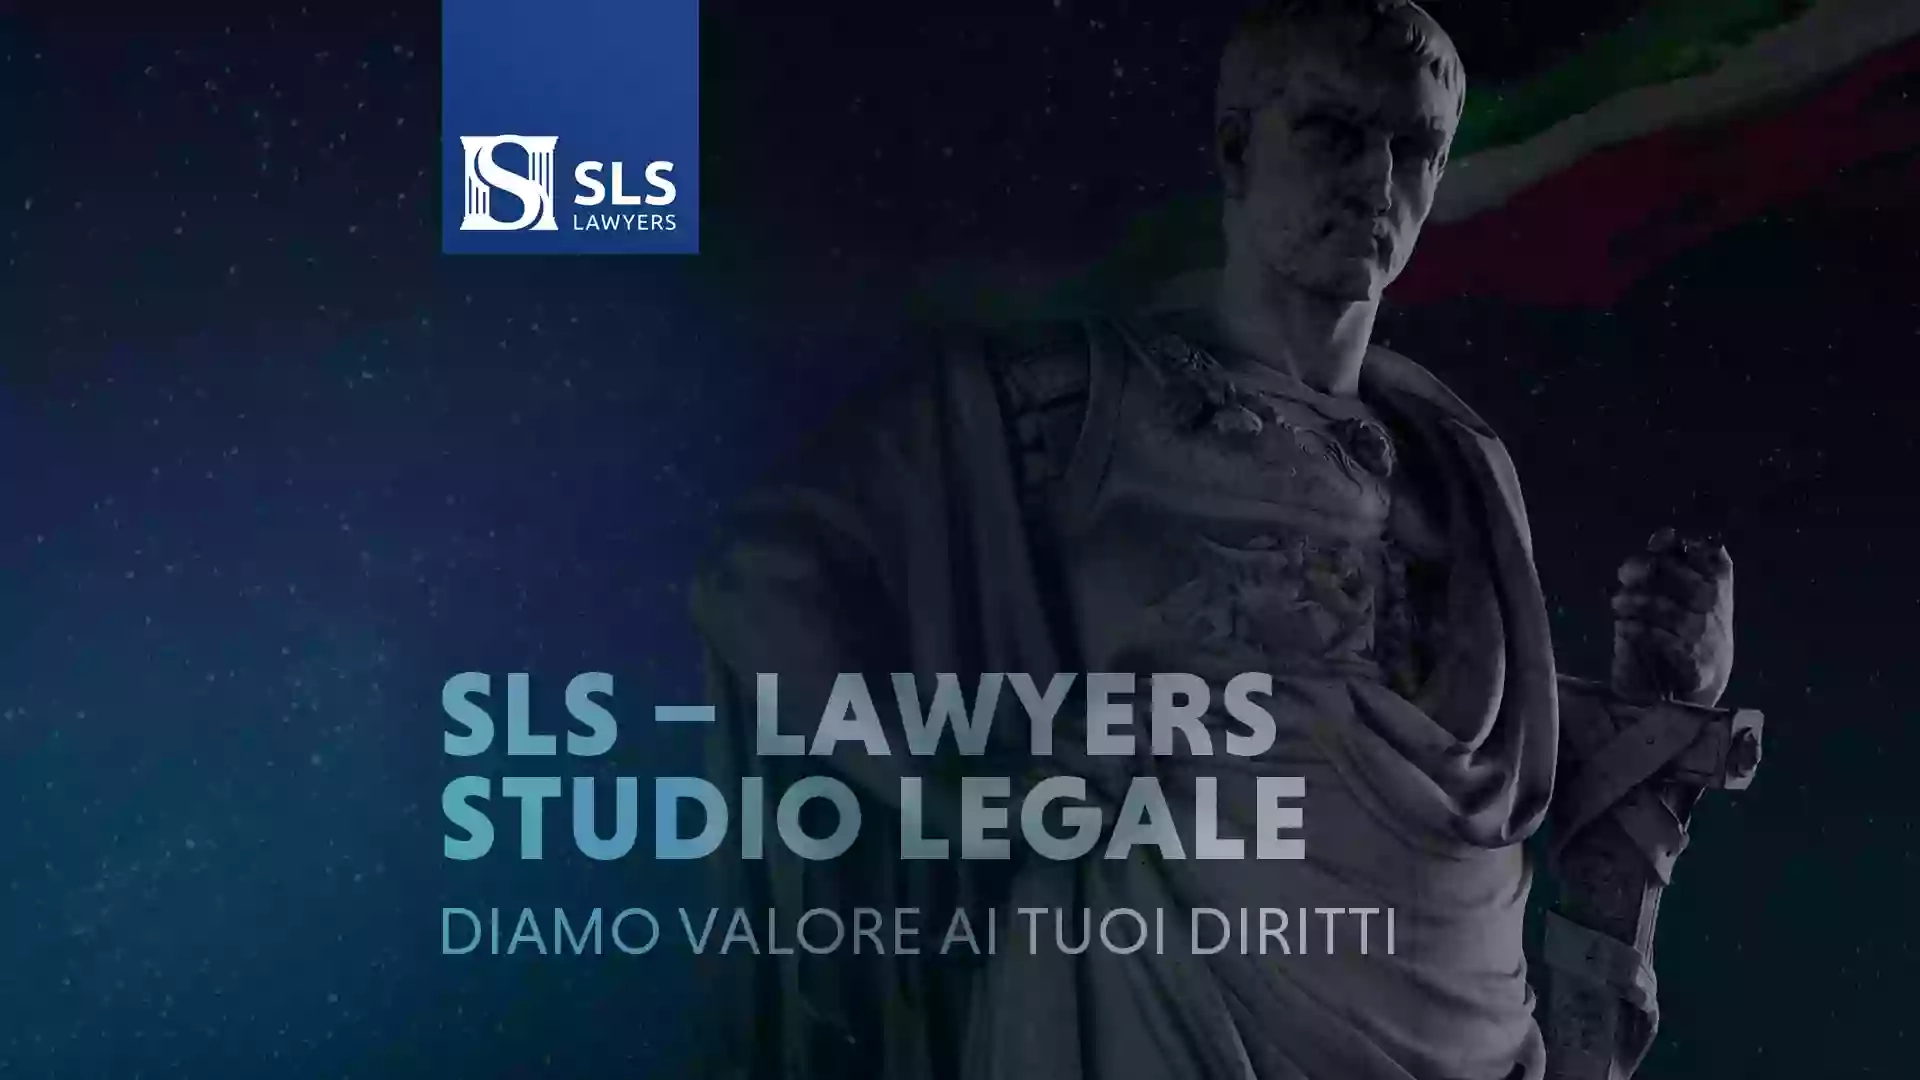 SLS - Lawyers